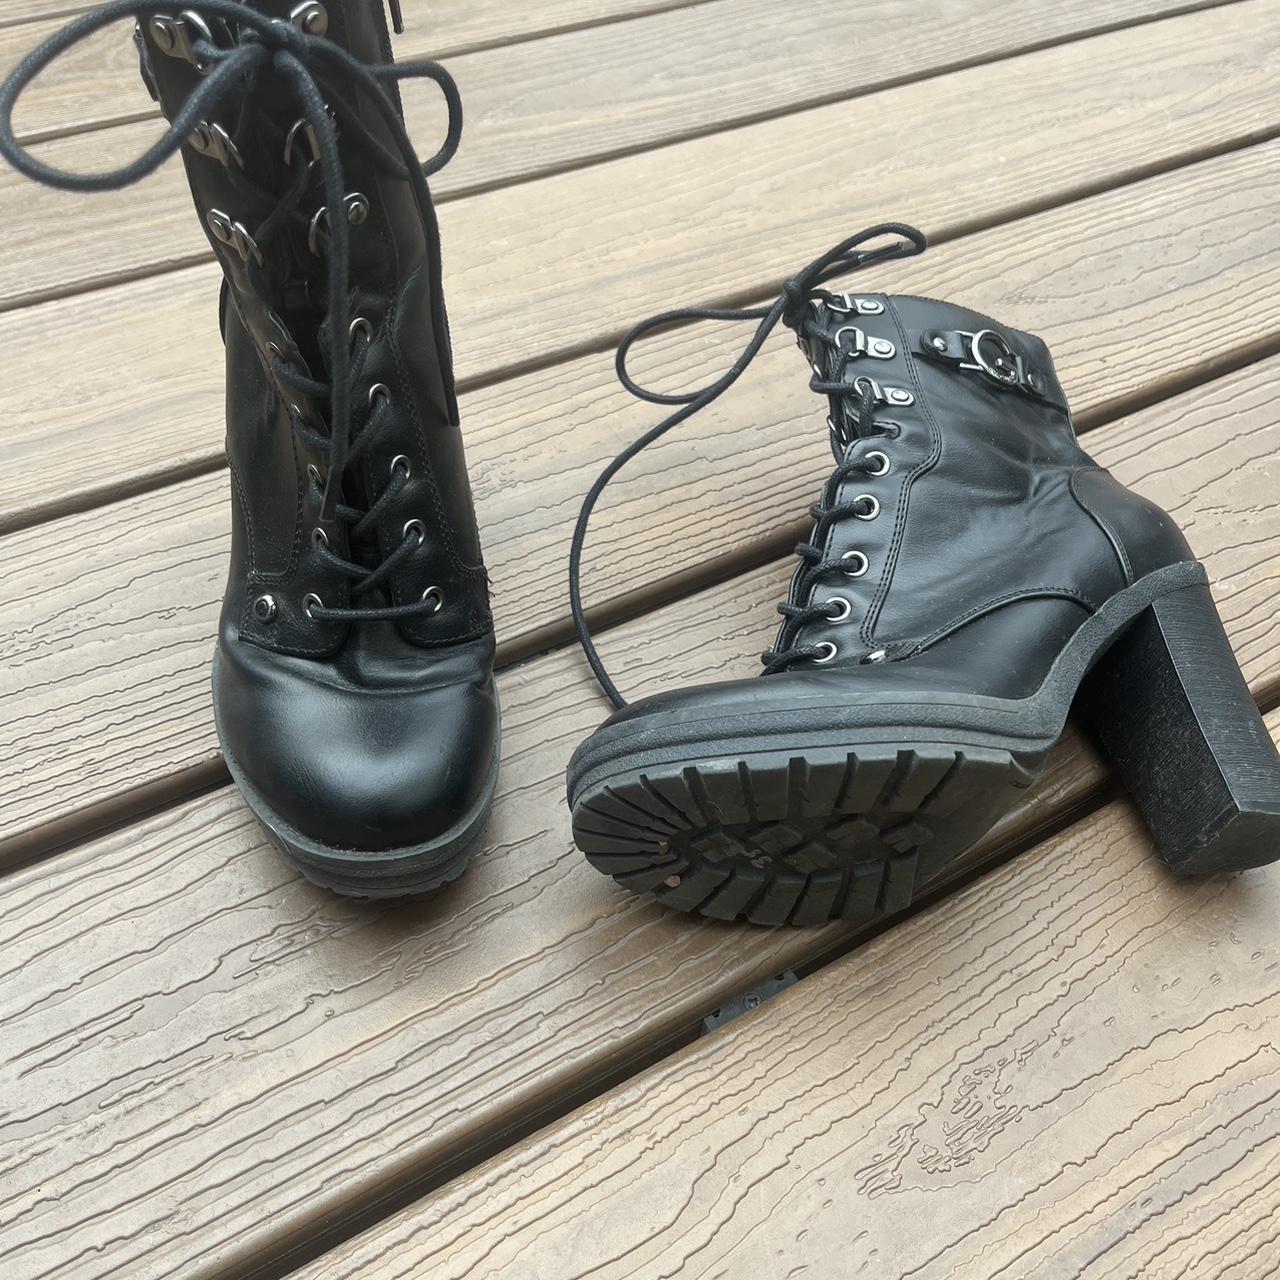 Guess Women's Black Boots | Depop